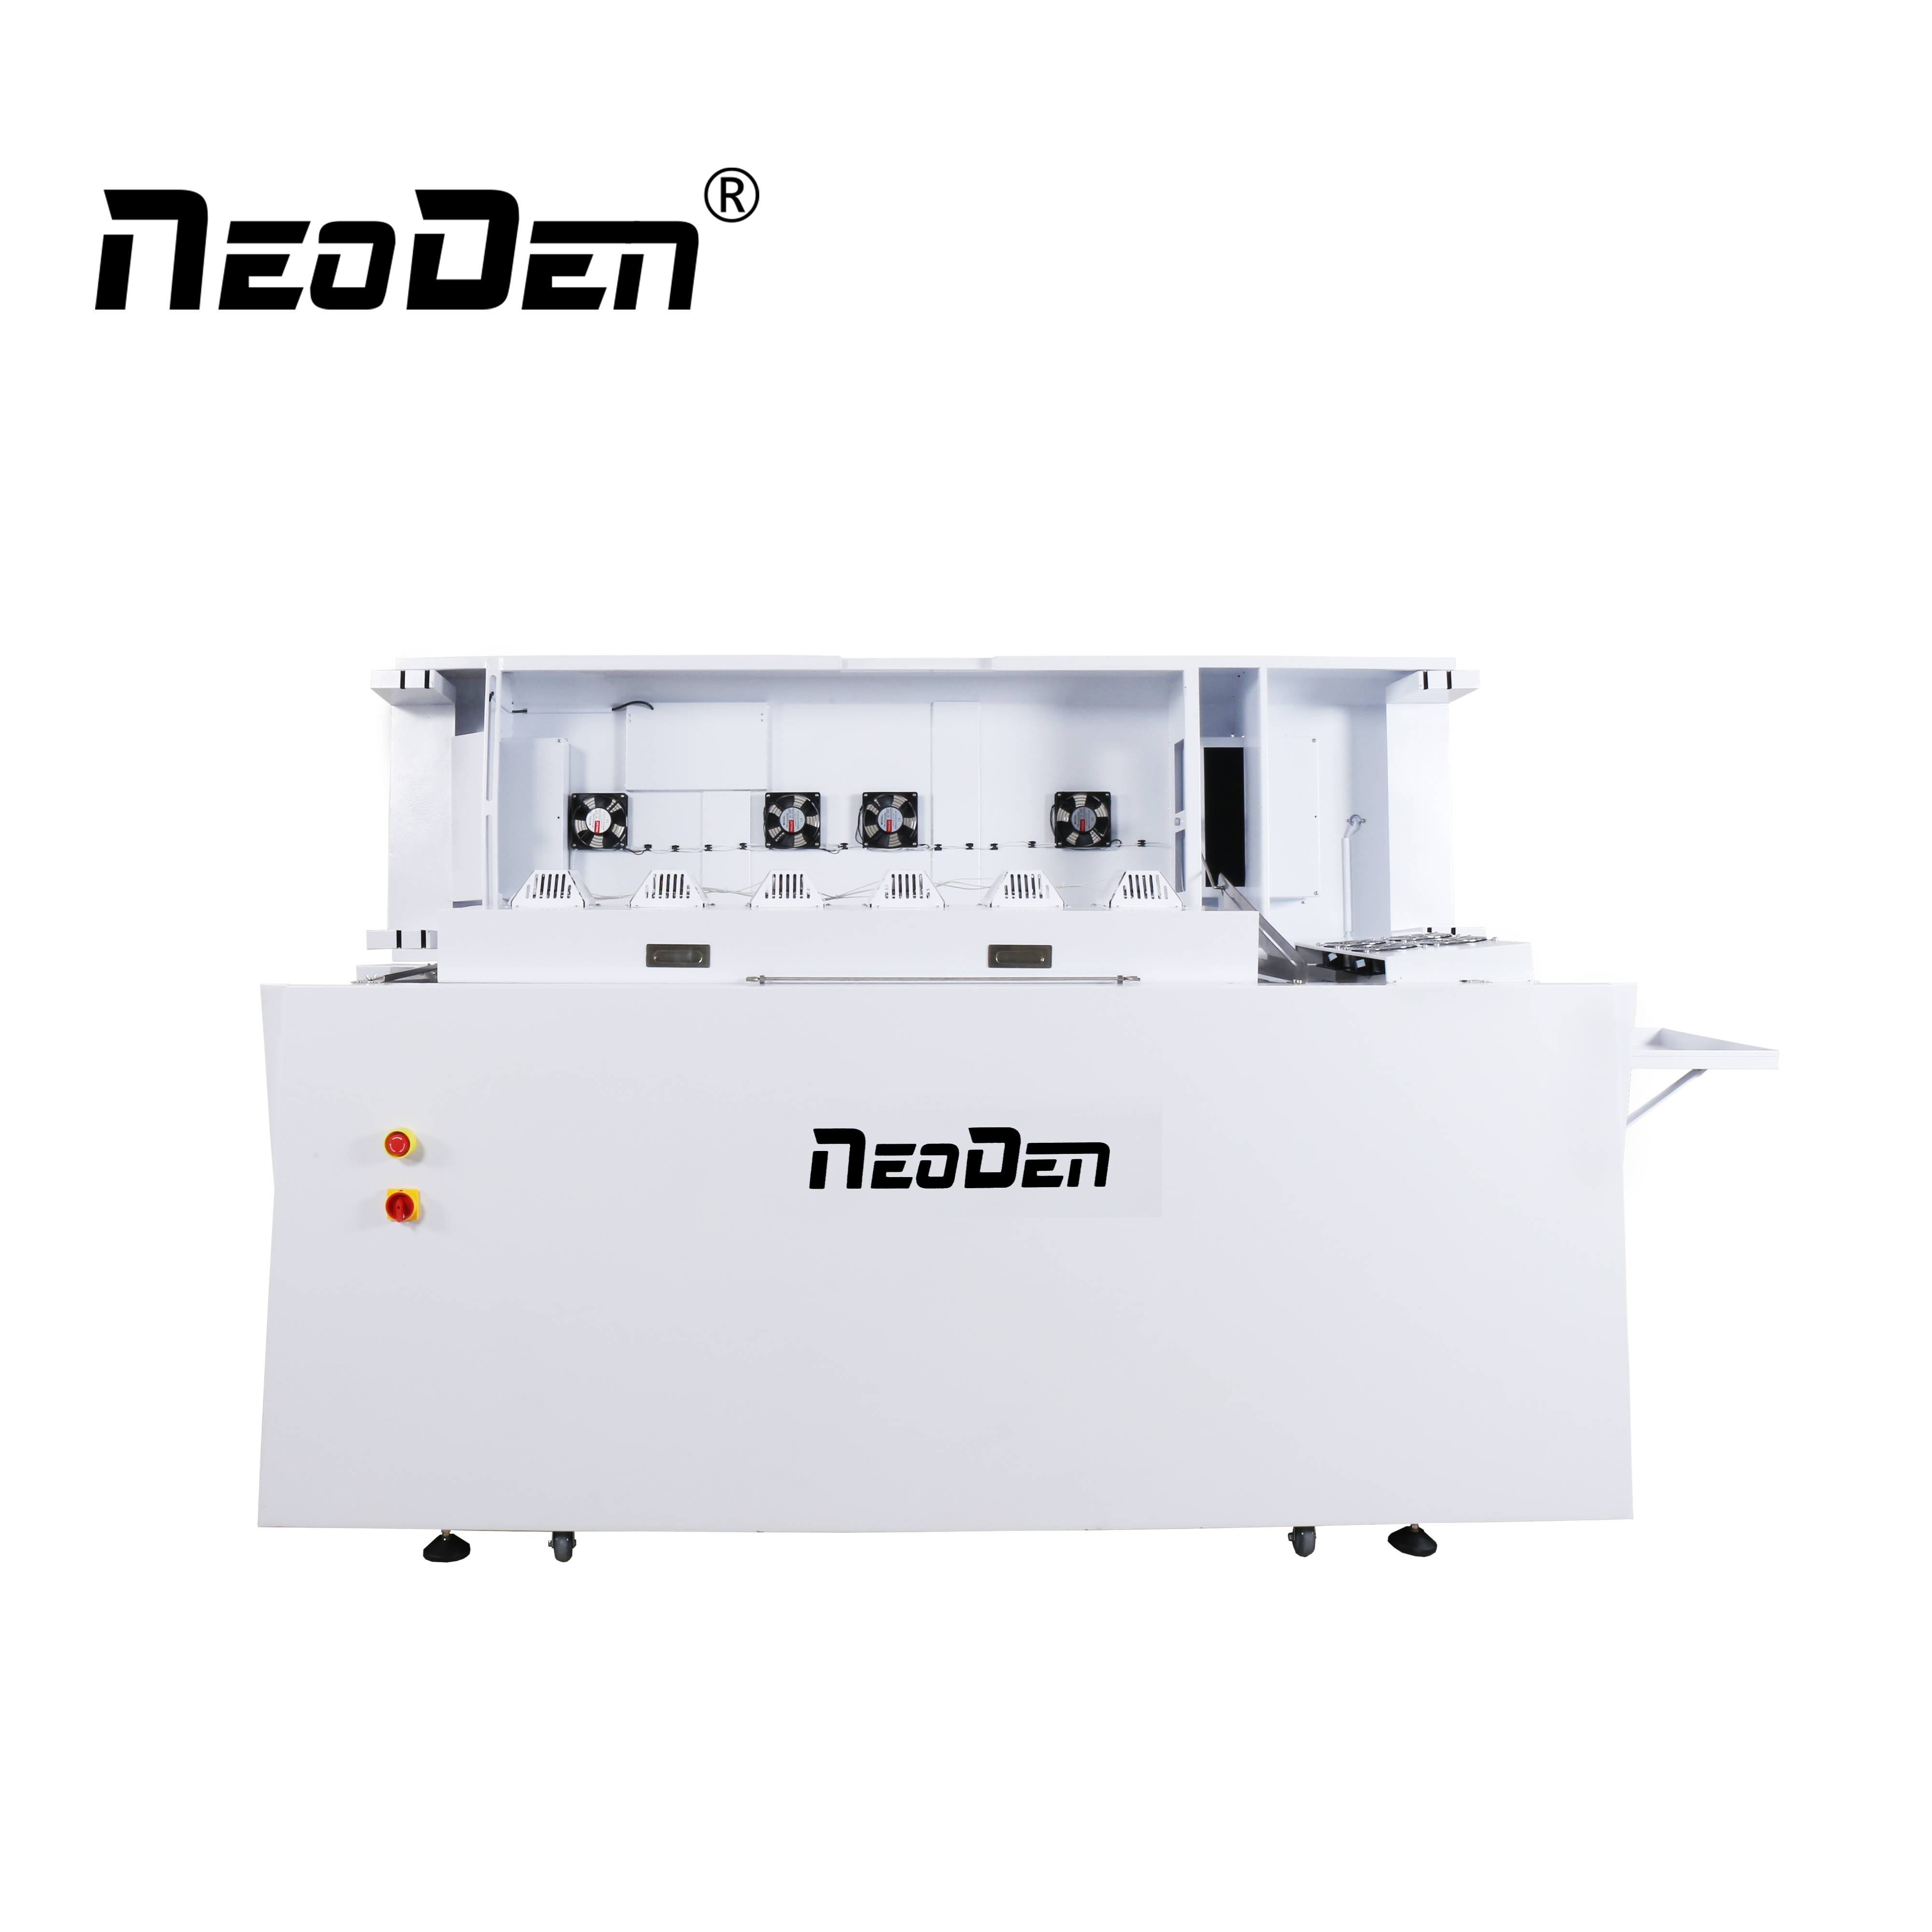 NeoDen IN12 SMT oveni ya kutiririsha tena